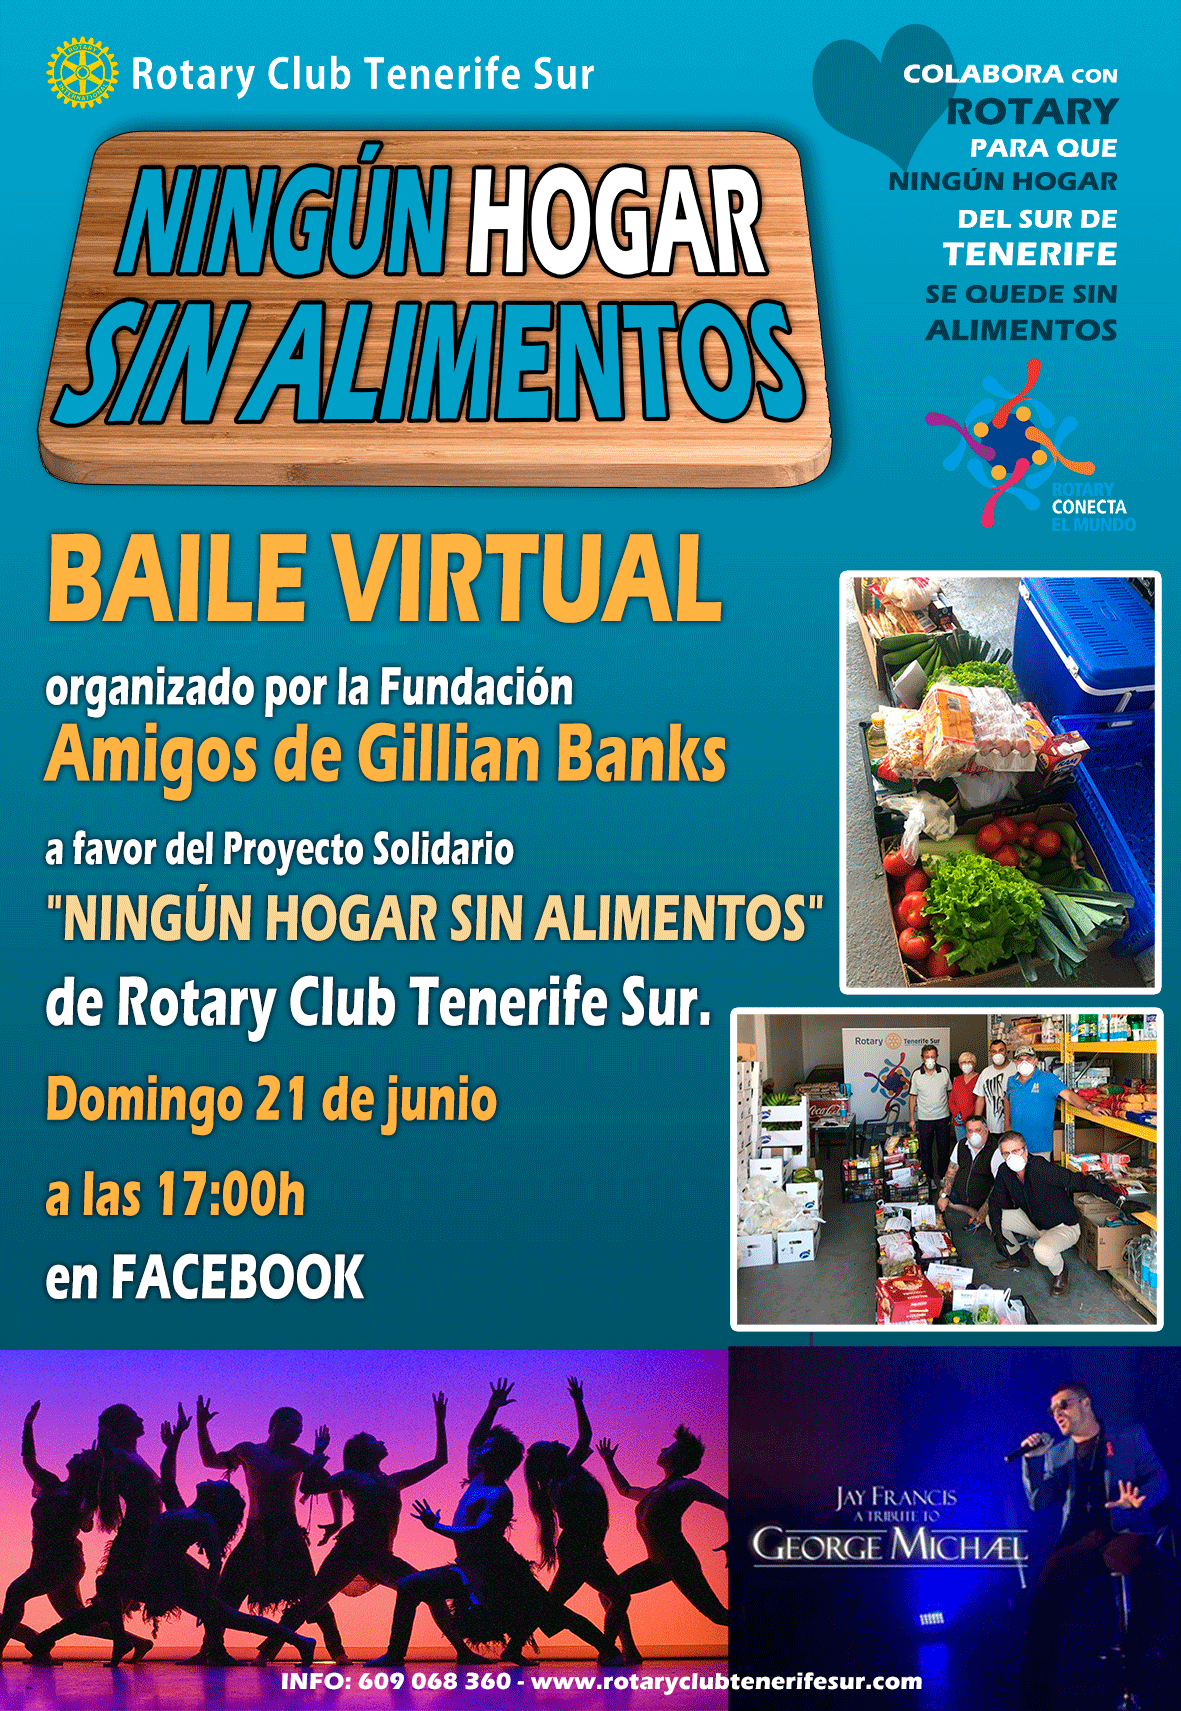 Baile Virtual organizado por la Fundación «Amigos de Gillian Banks» a favor del Proyecto Solidario «NINGÚN HOGAR SIN ALIMENTOS» de Rotary Club Tenerife Sur. Domingo 21 de junio a las 17:00h.